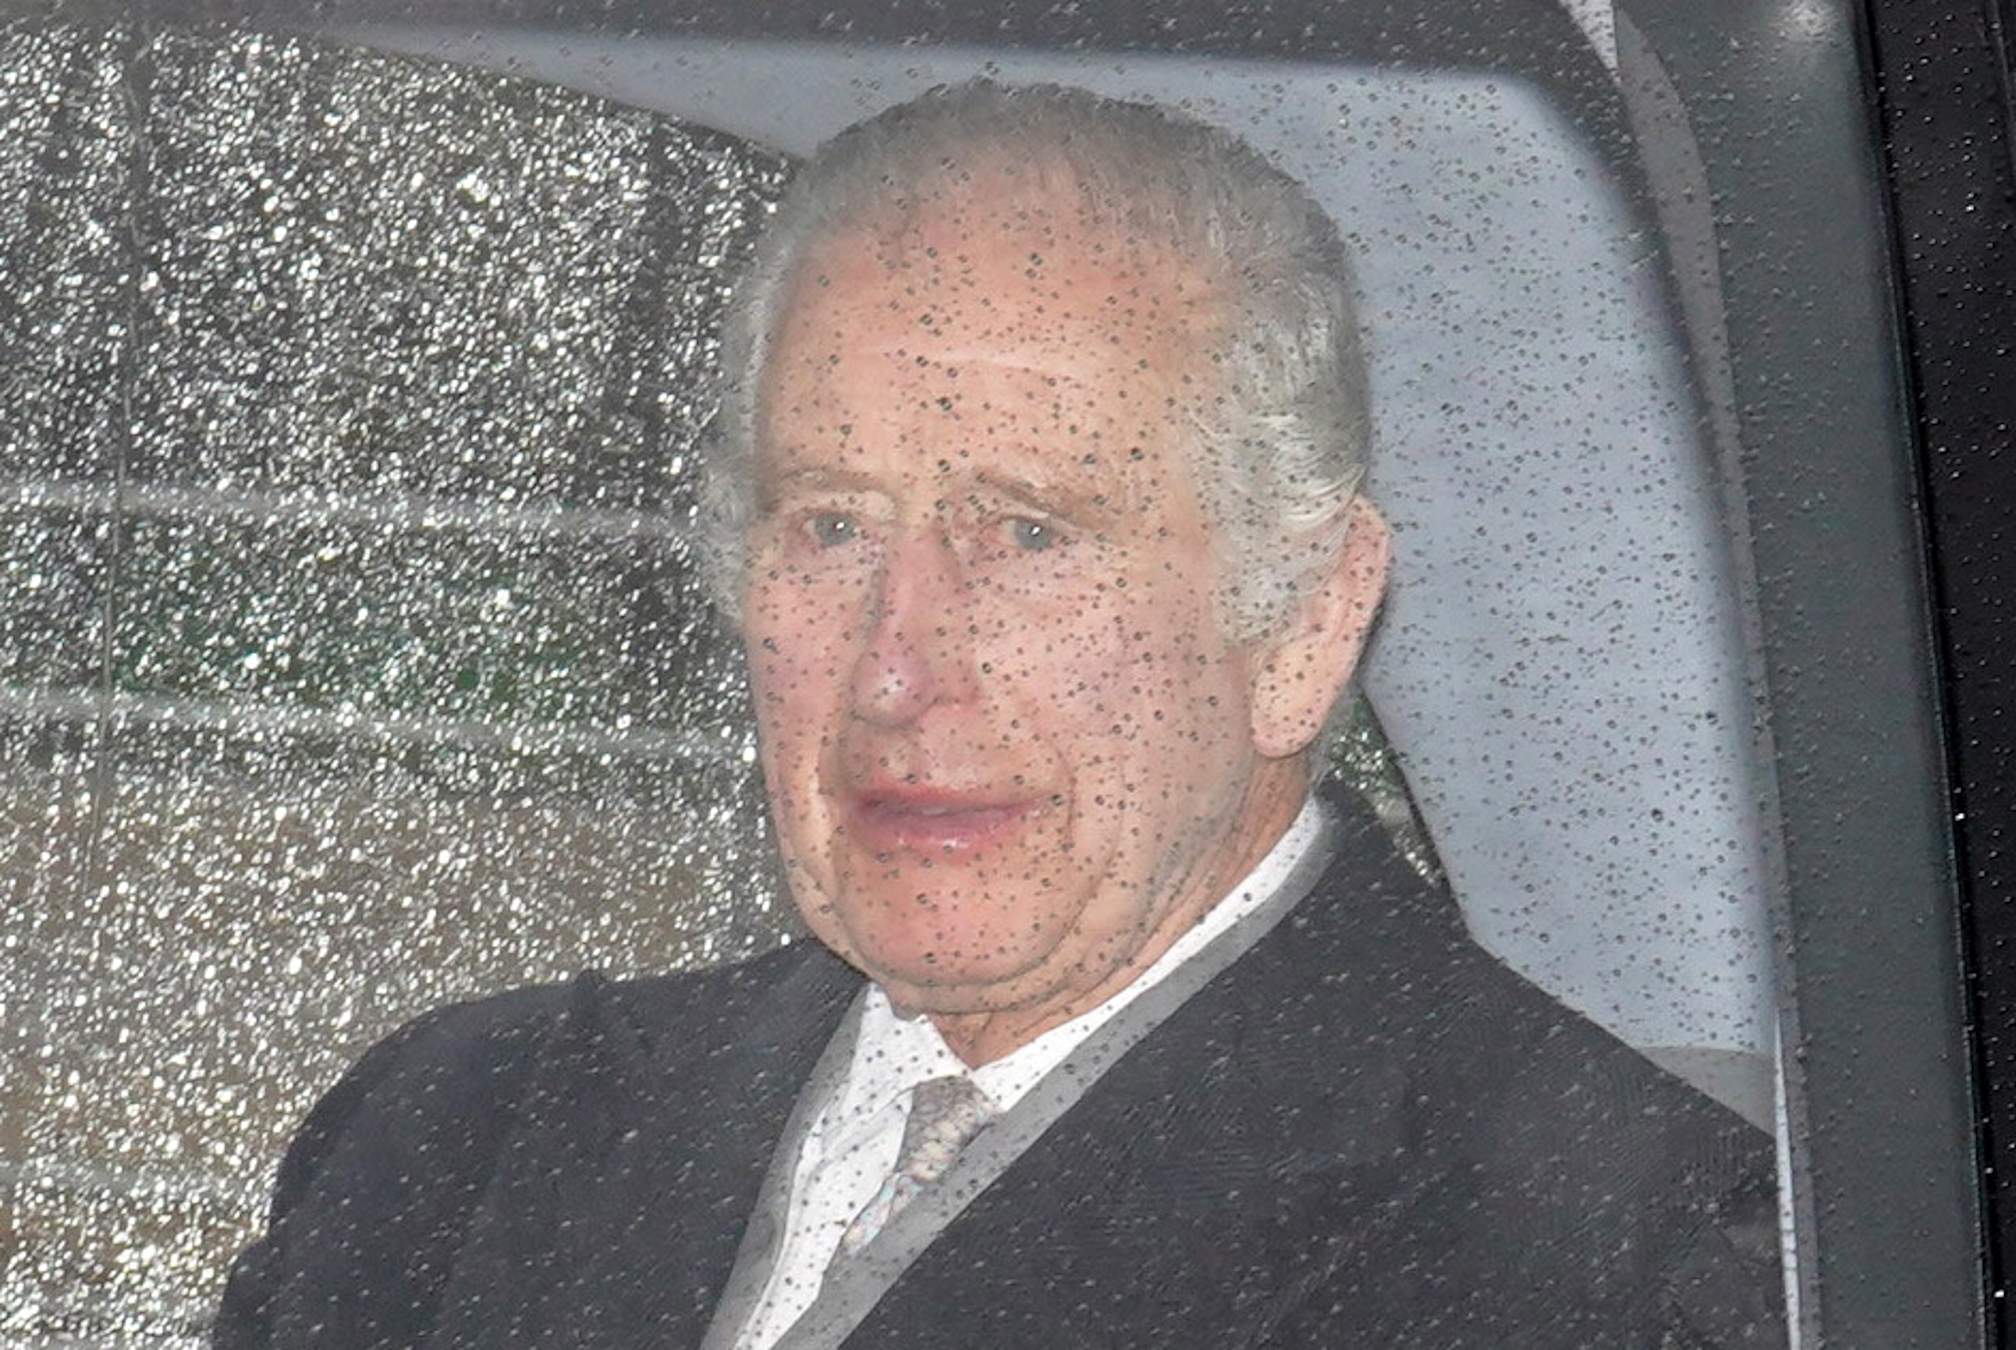 Carles III humiliat, foto de mal gust del seu germà en el pitjor moment